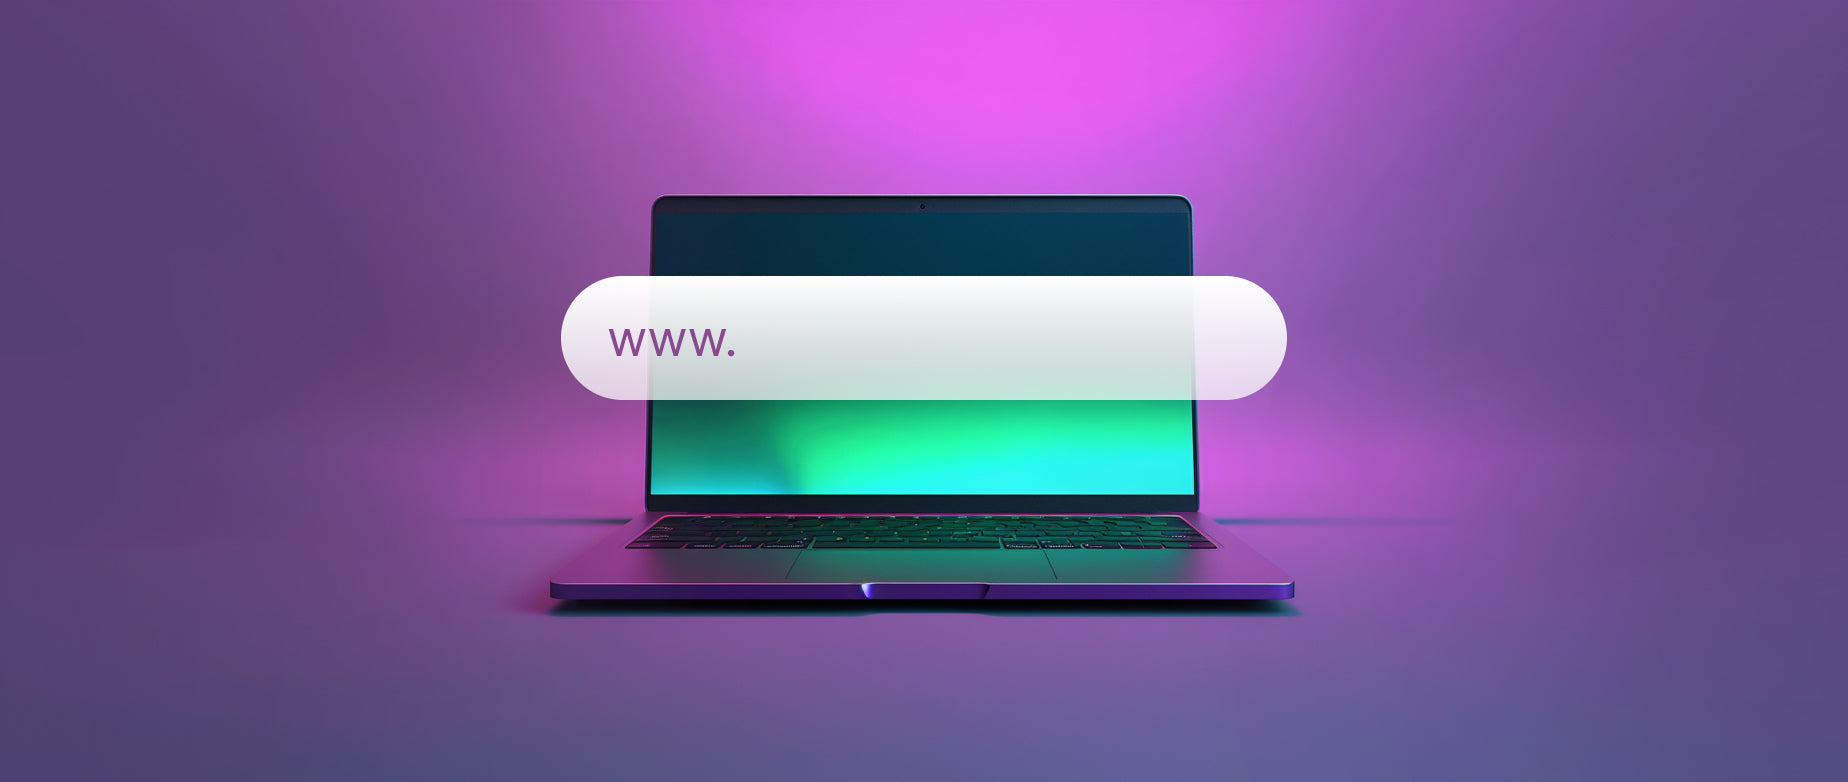 hoe registreer je een domeinnaam: laptop met daarop een zoekbalk en www